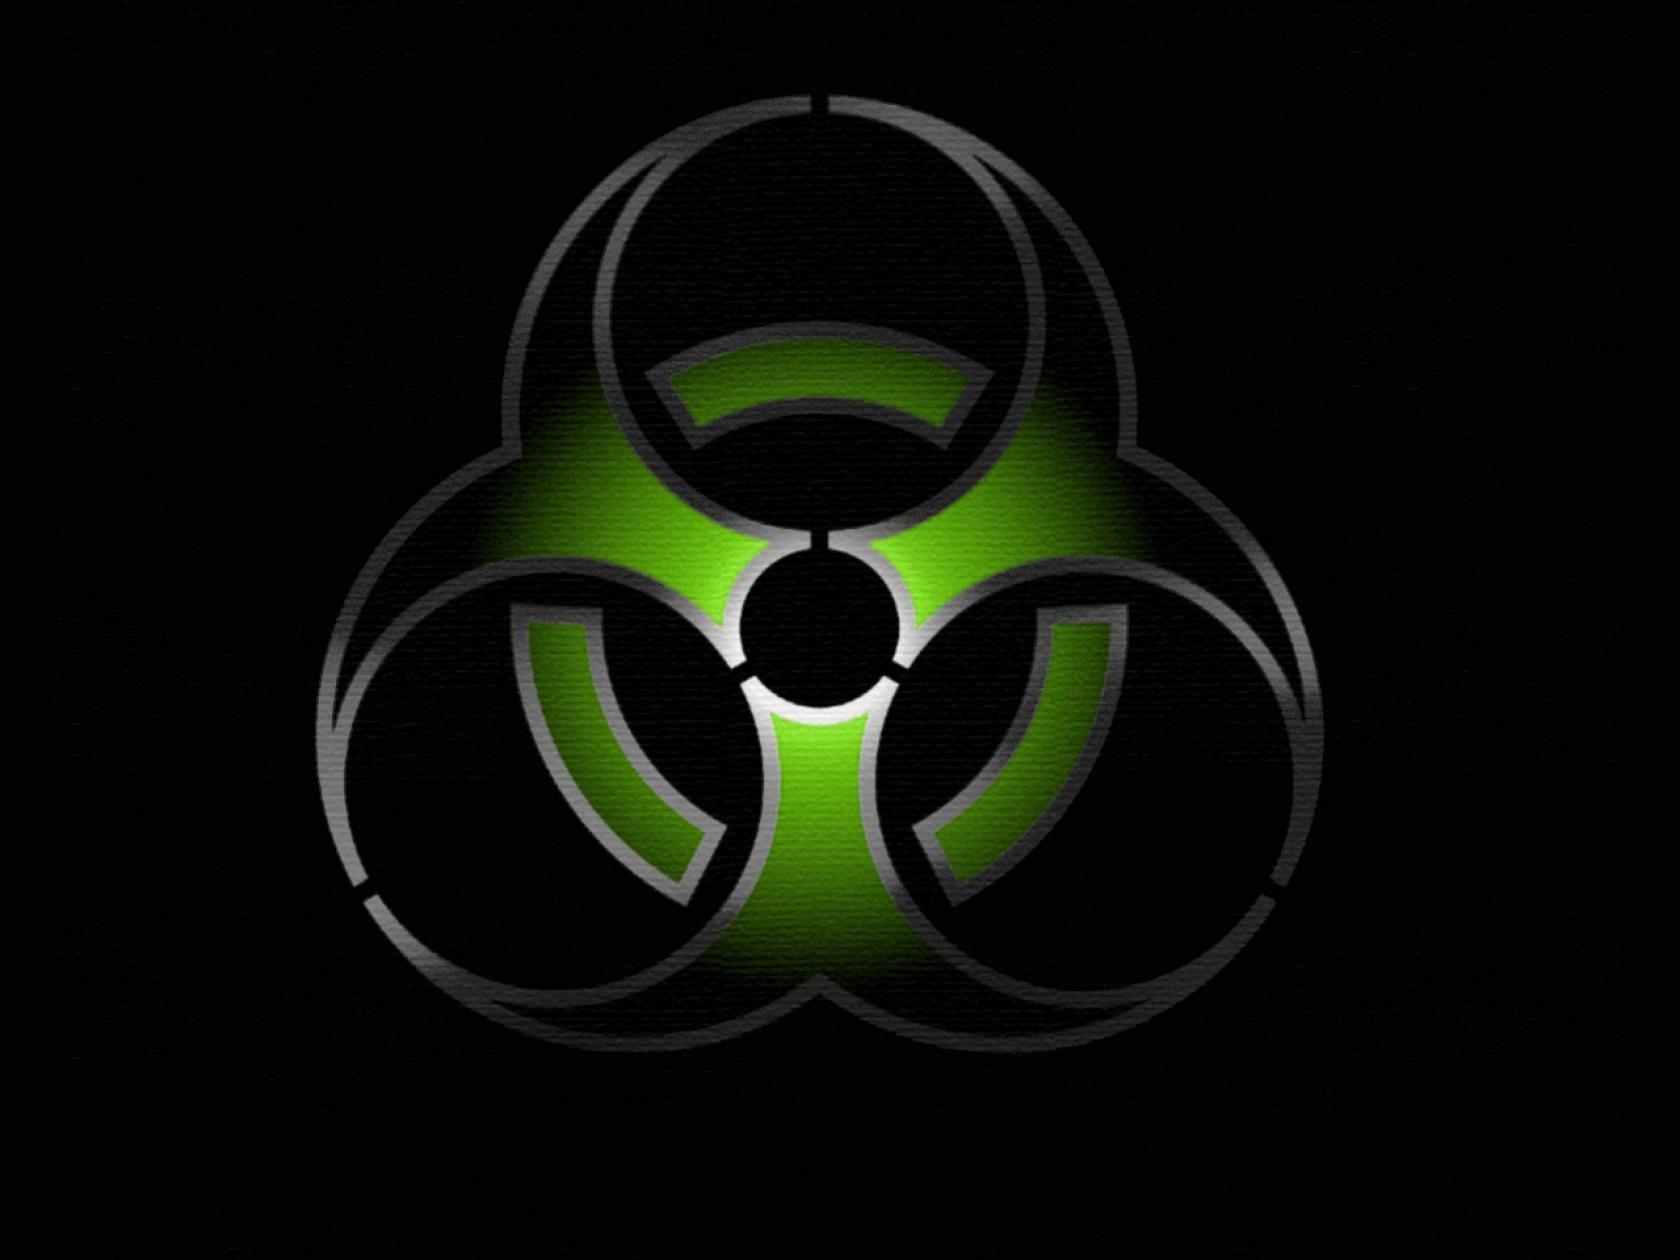 Biohazard Symbol Wallpaper. Best Games Wallpaper